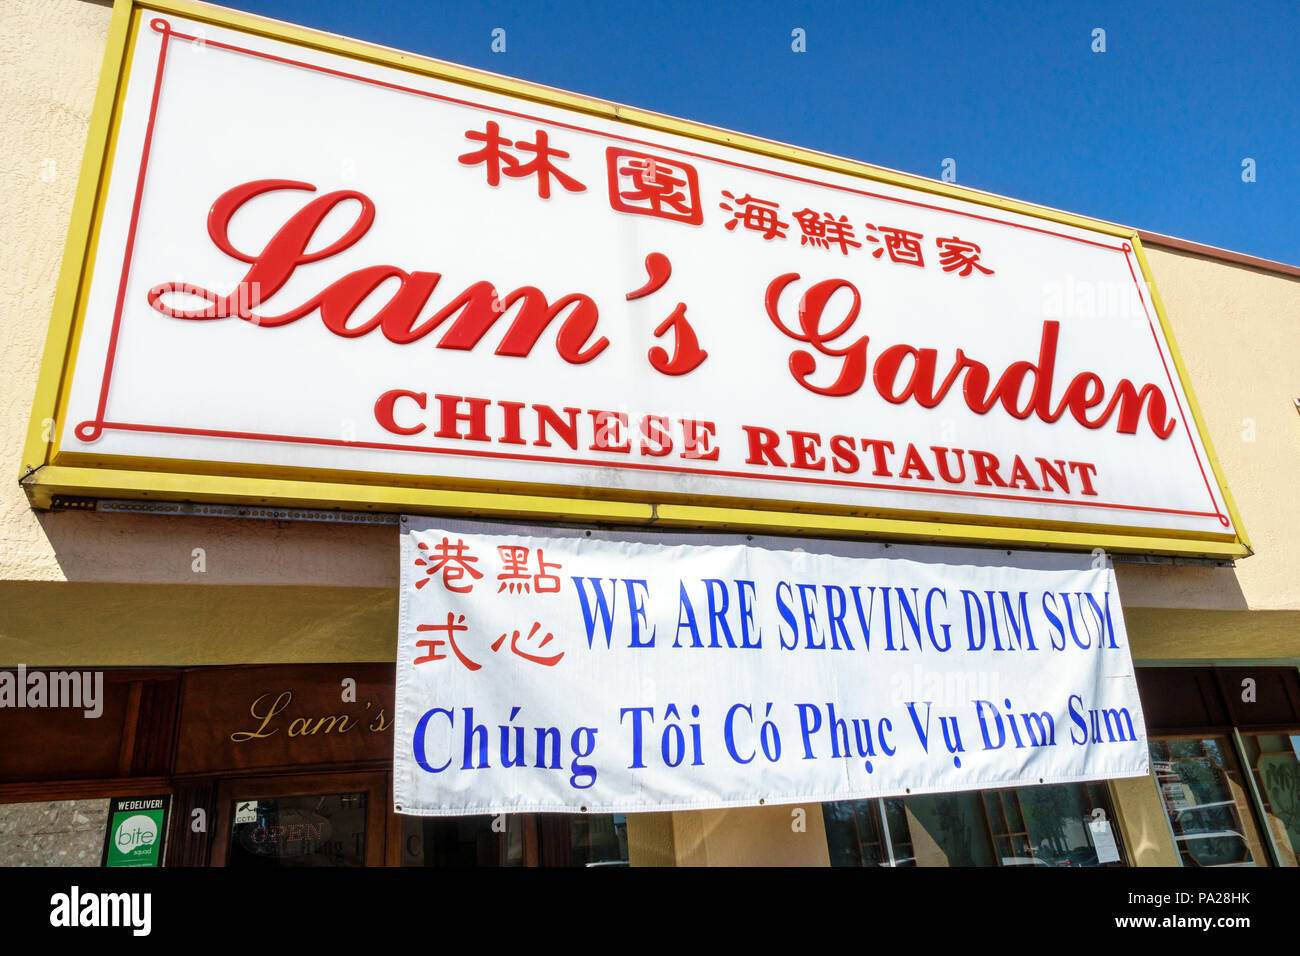 Orlando Florida,Chinatown,Lam's Garden Chinese,ristorante ristoranti ristorazione caffè bistrot,dim sum,esterno,insegna,lingua vietnamita Foto Stock